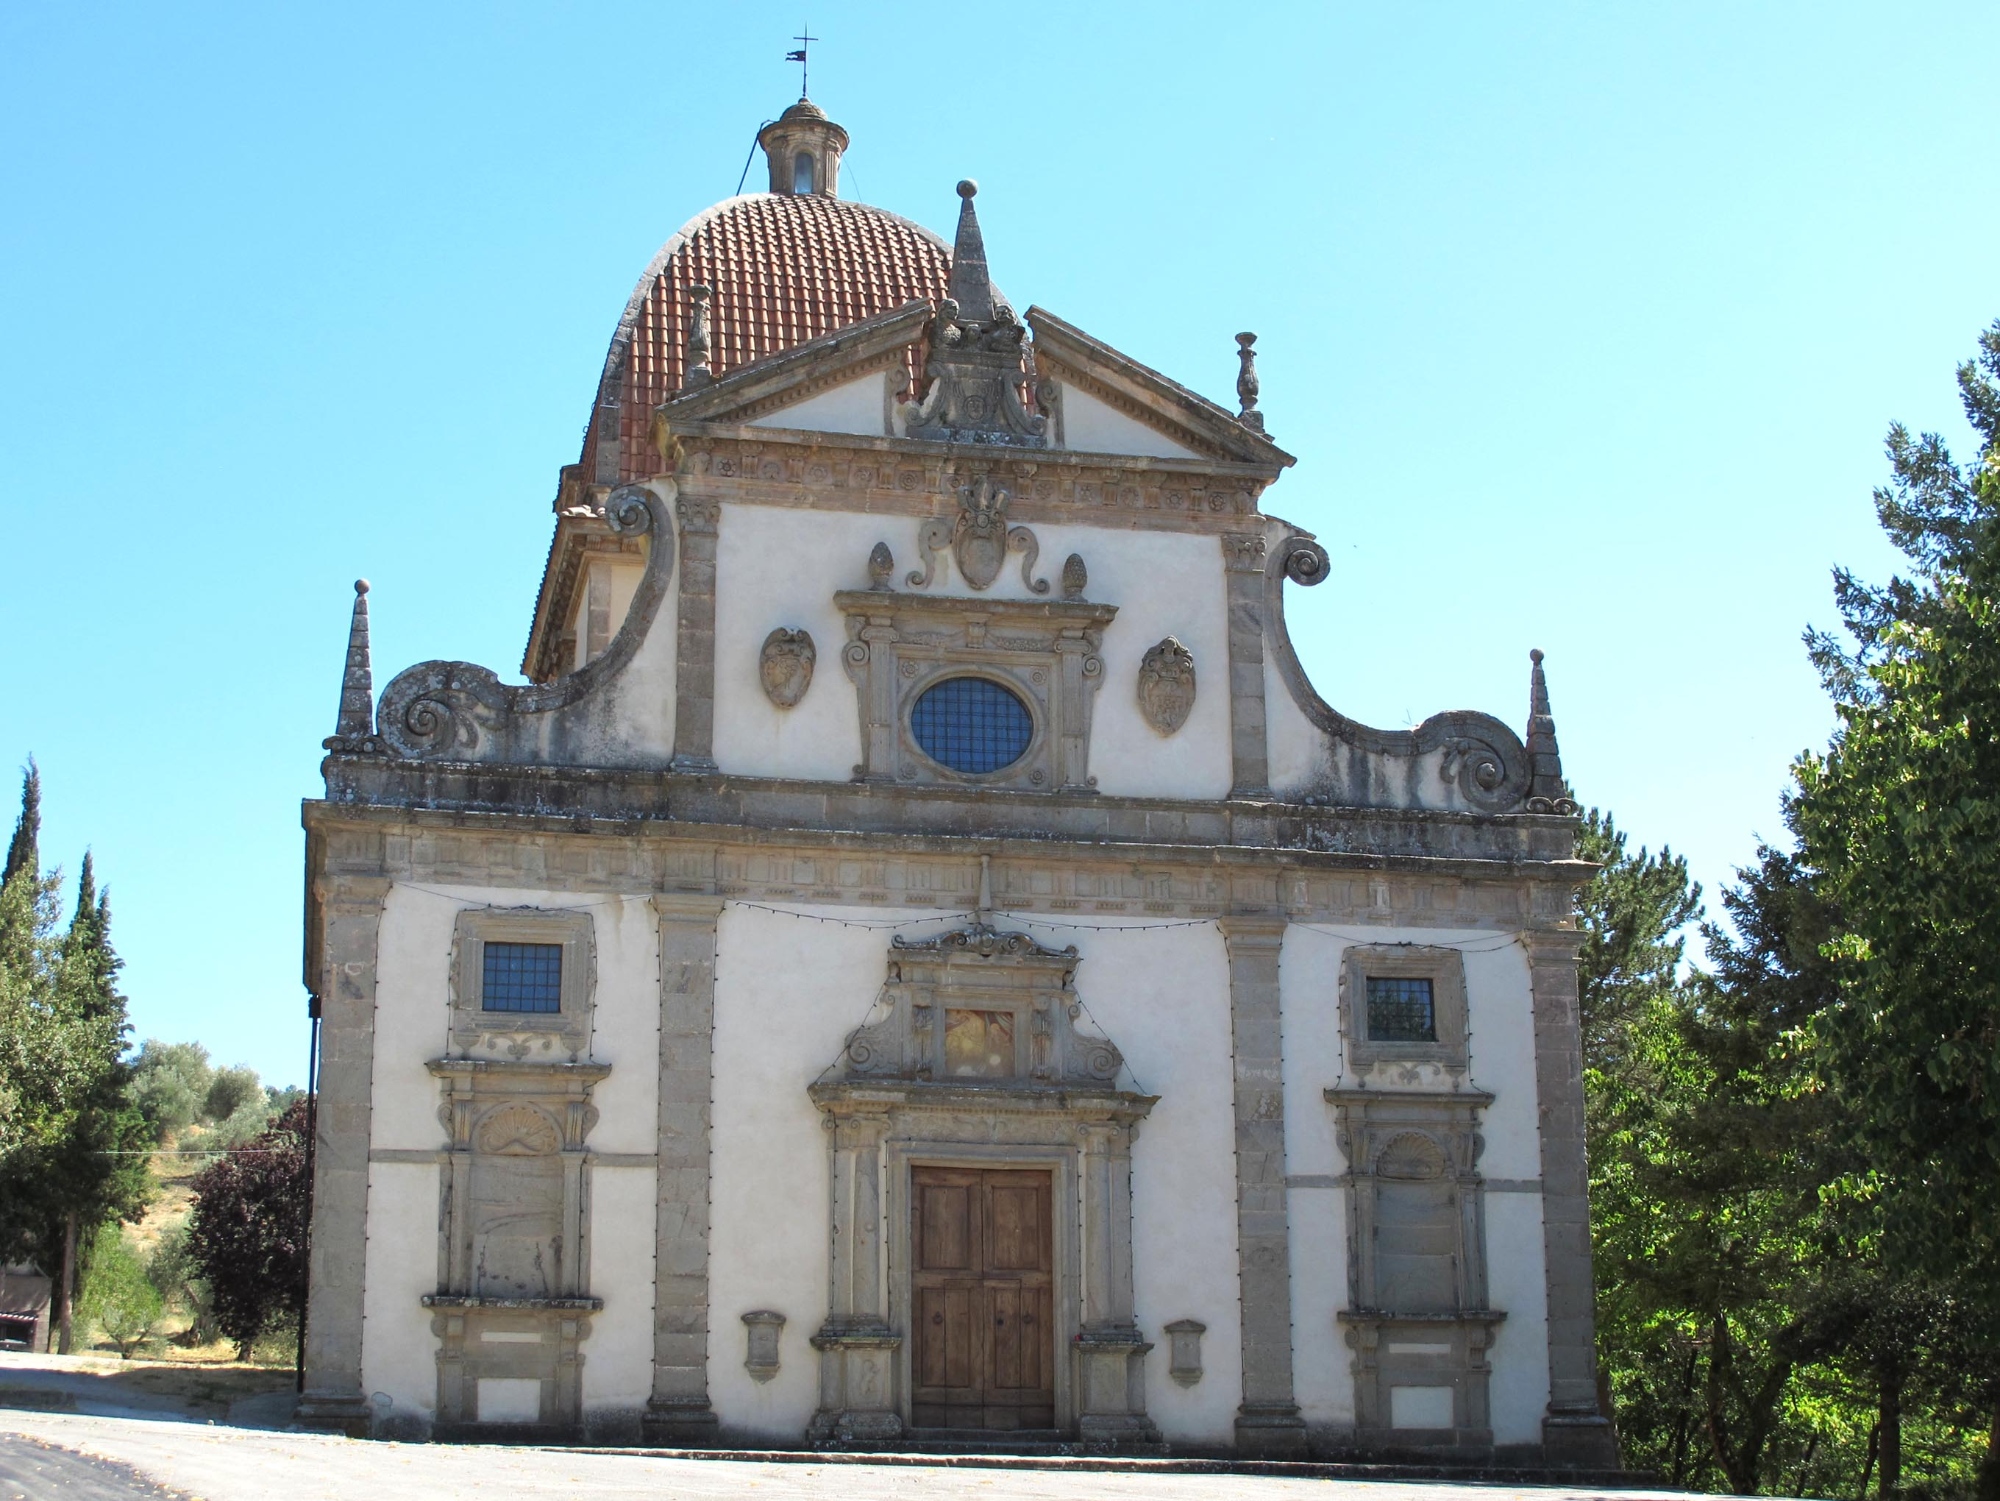 The Sanctuary of Madonna della Carità - Seggiano